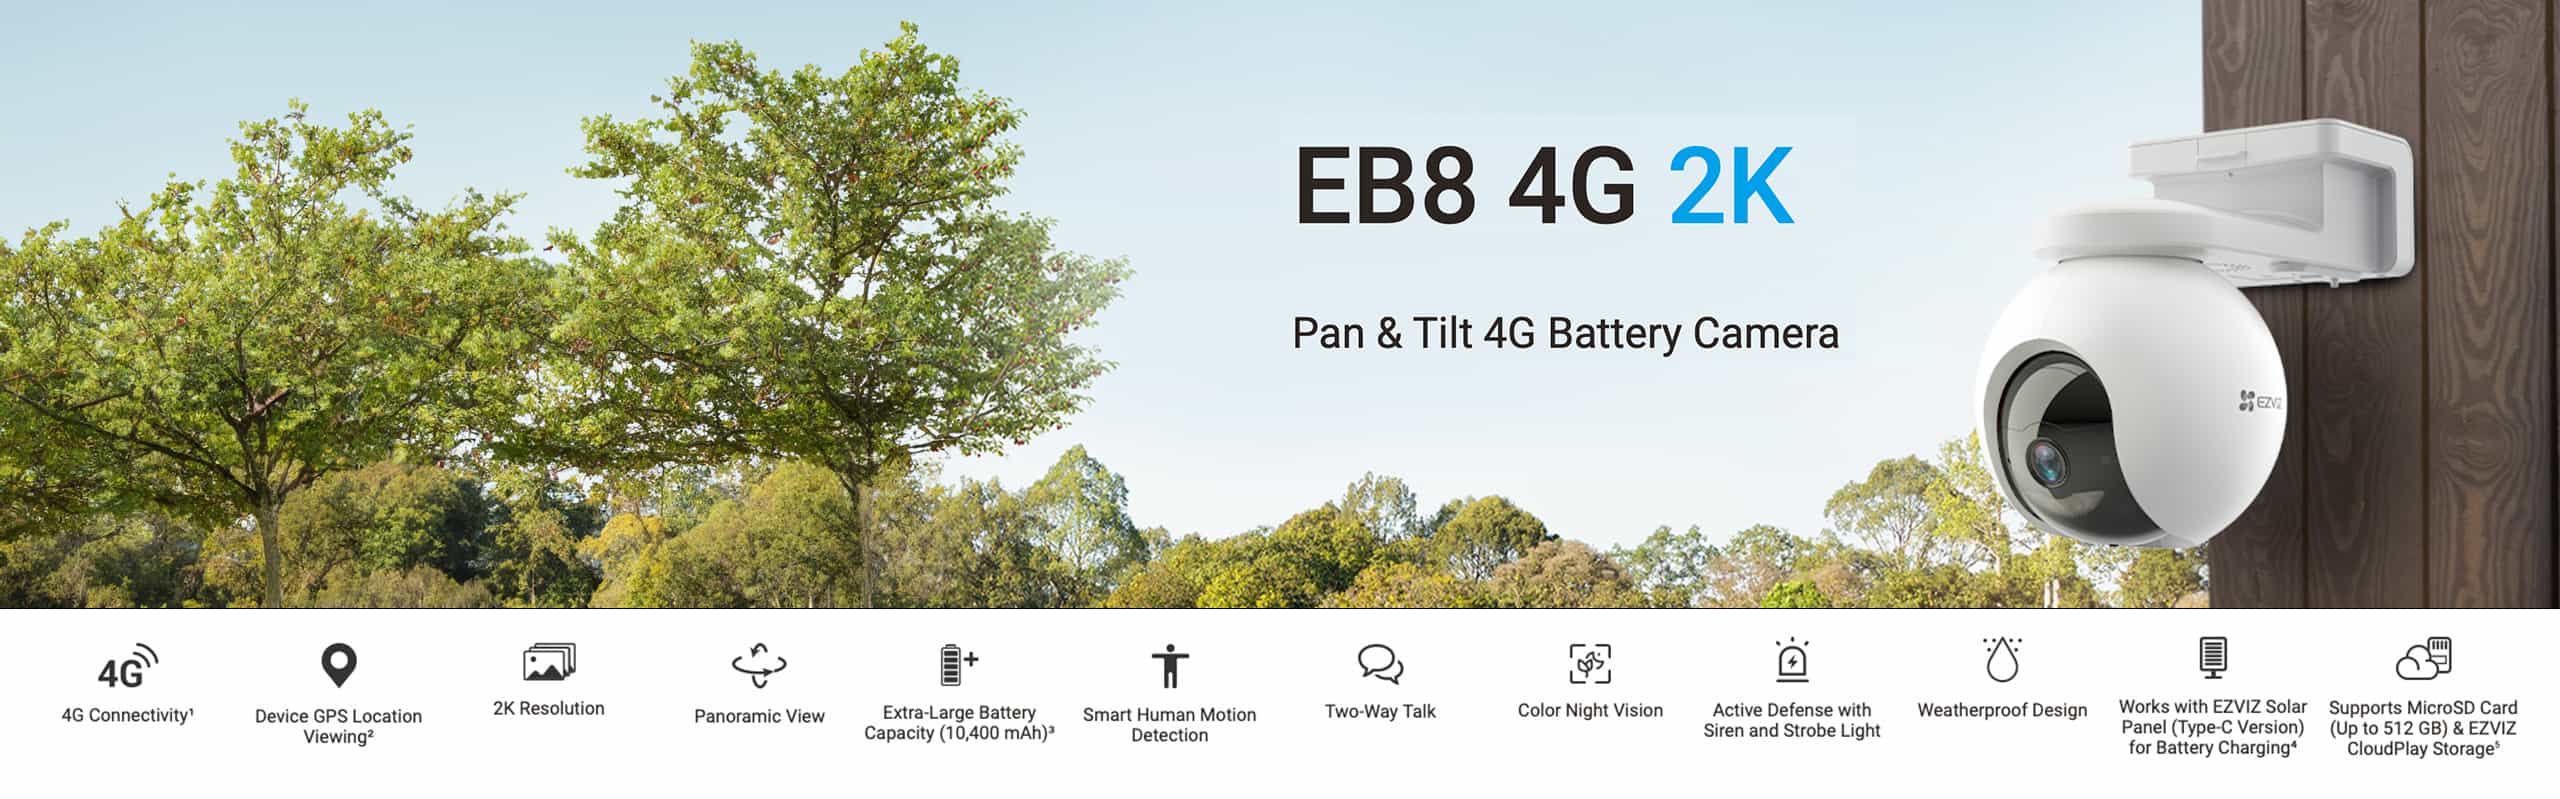 EB8 4G 2K - Pan & Tilt 4G Battery Camera